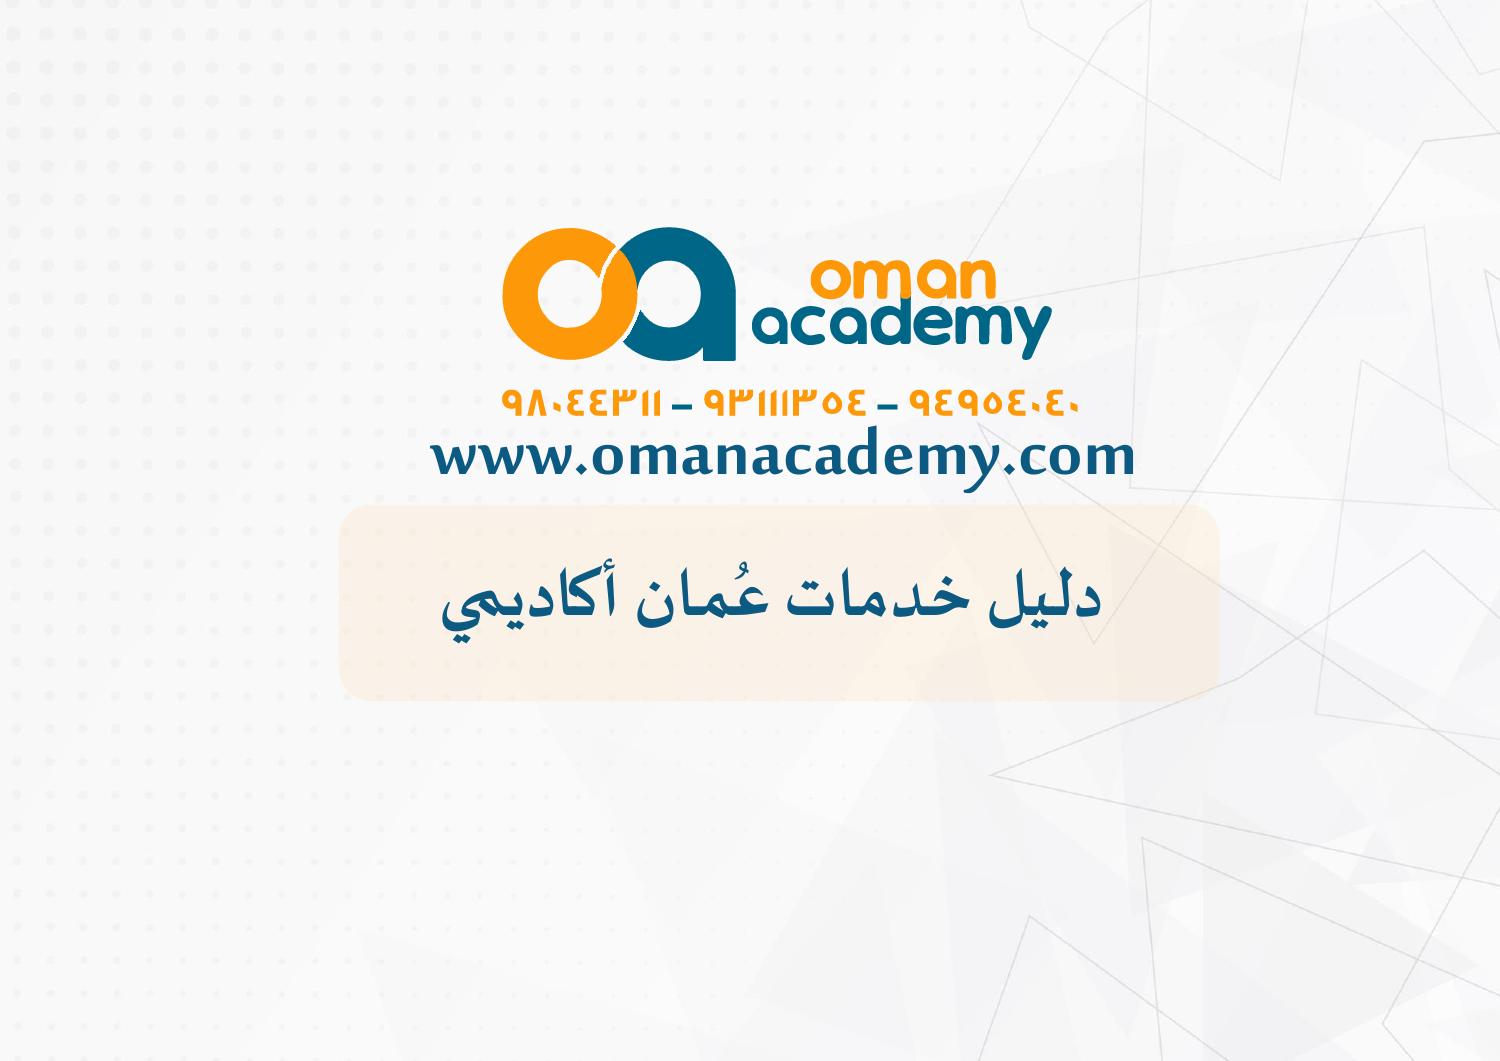 التسجيل في منصة عمان أكاديمي التعليمية ( عمان)